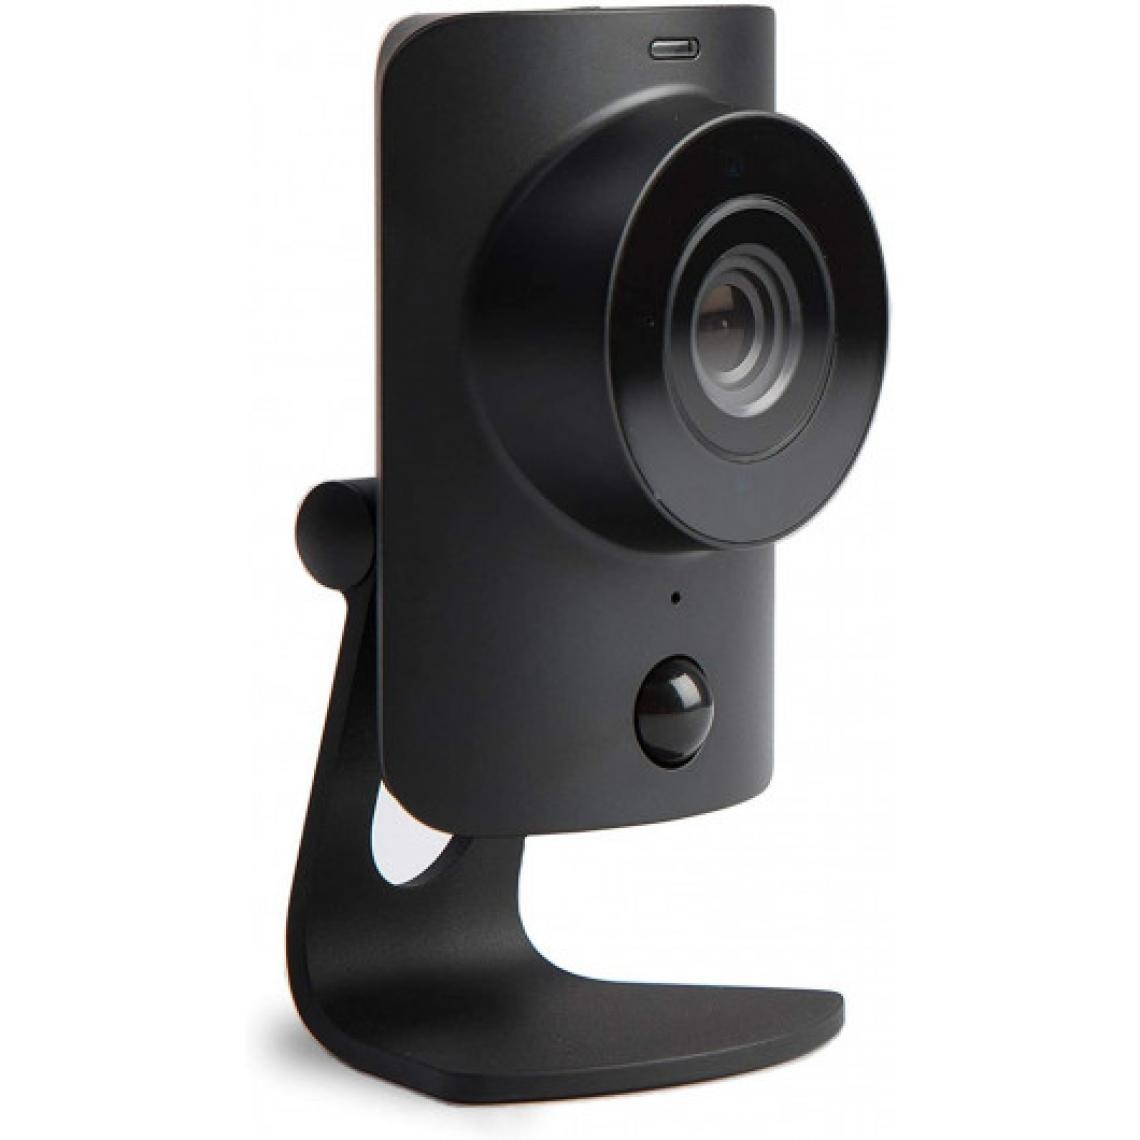 Ofs Selection - SimpliSafe SimpliCam, la petite caméra de sécurité - Caméra de surveillance connectée